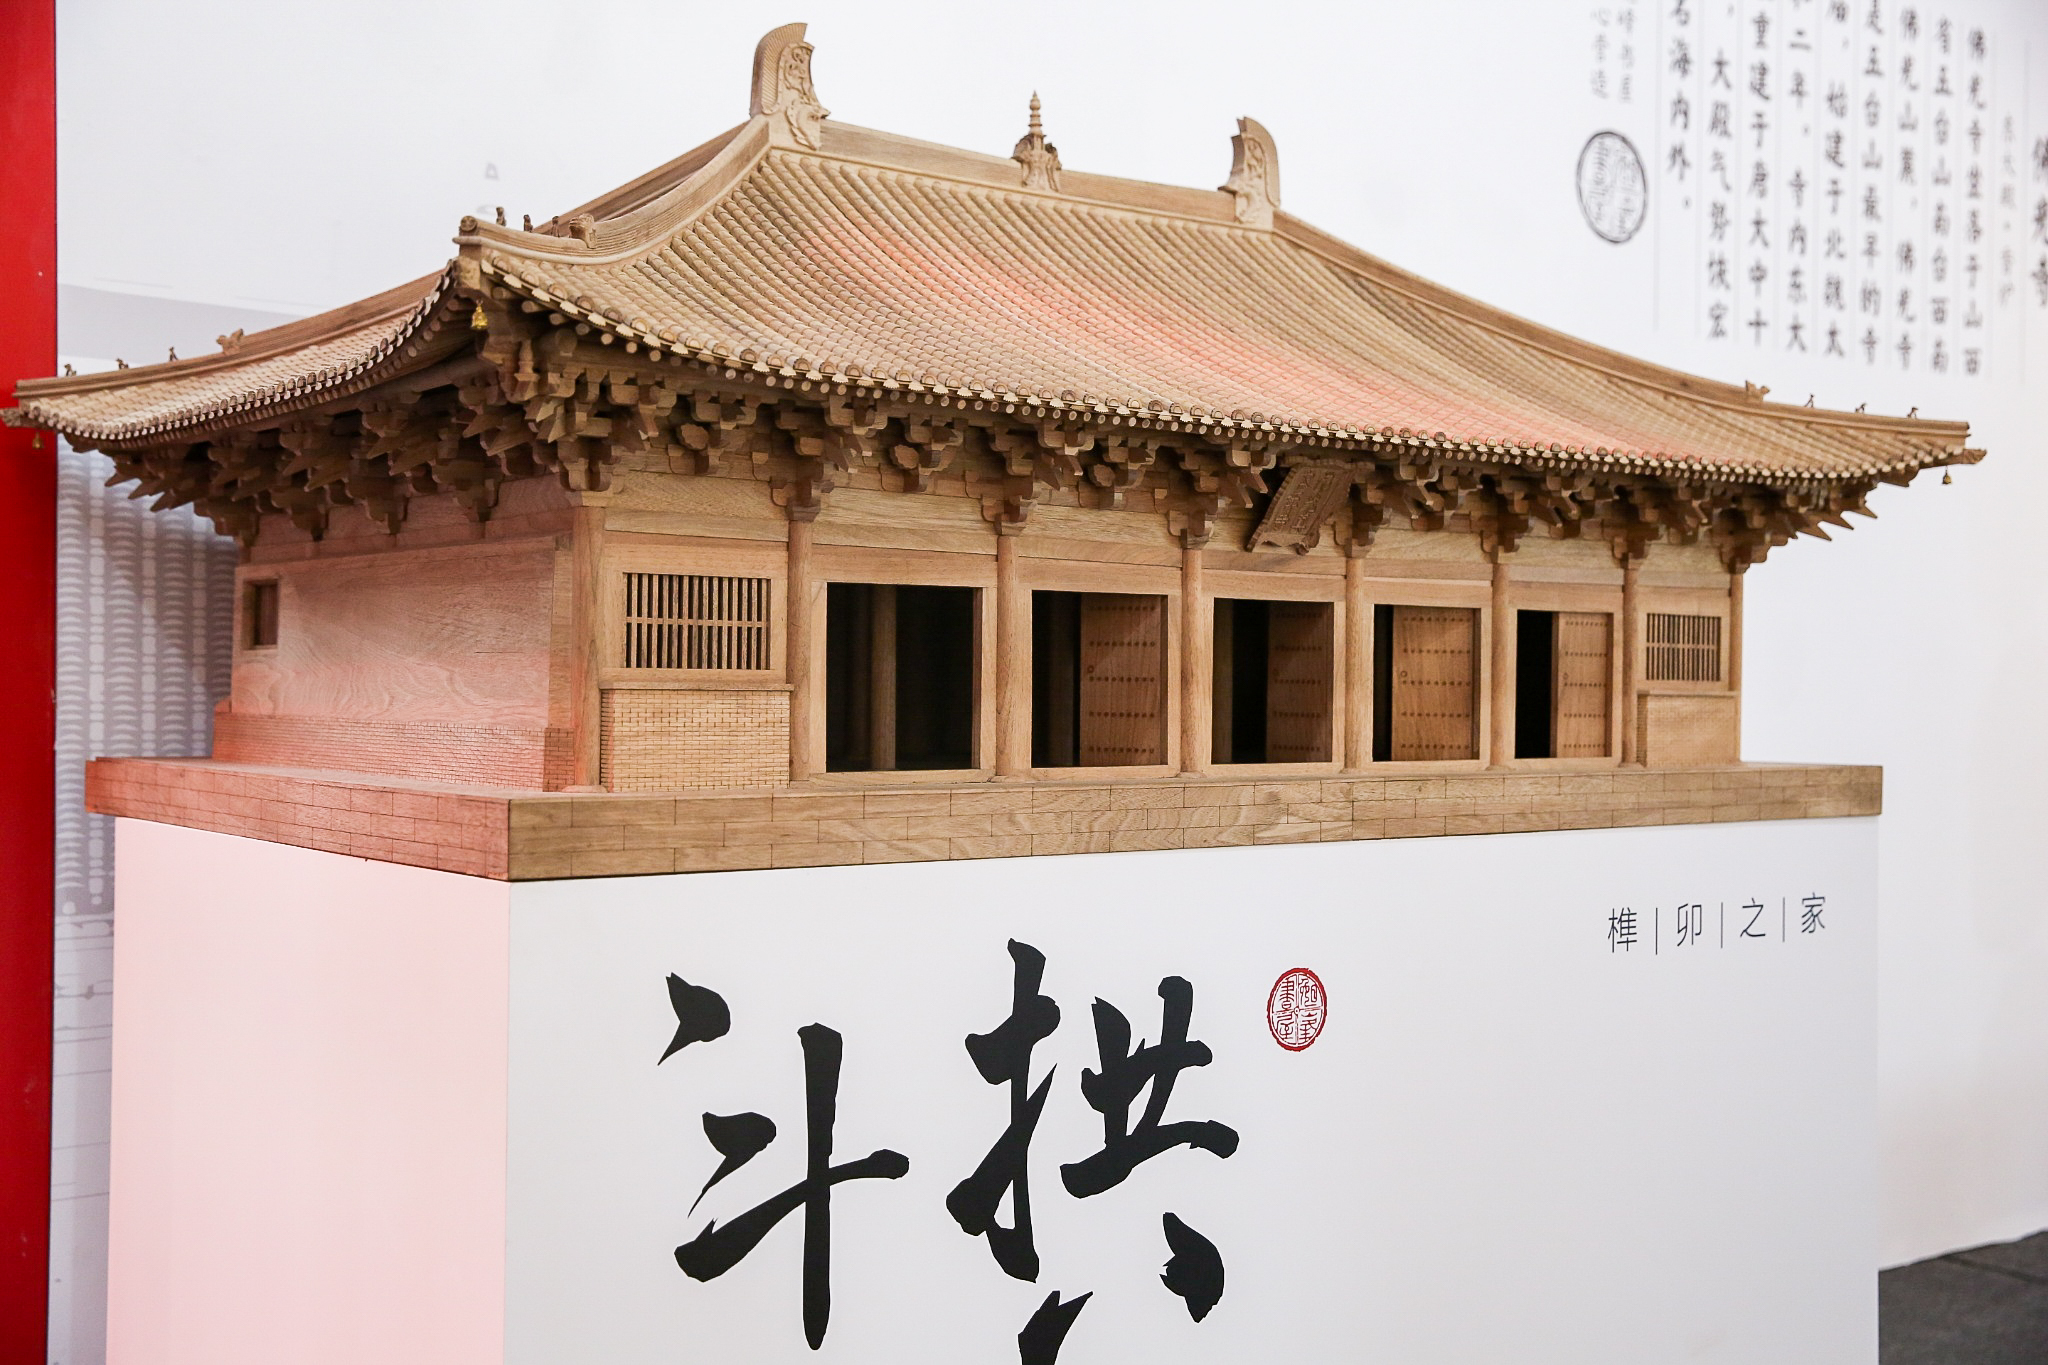 晚峰书屋将传统斗拱、榫卯结构做成了中国版乐高